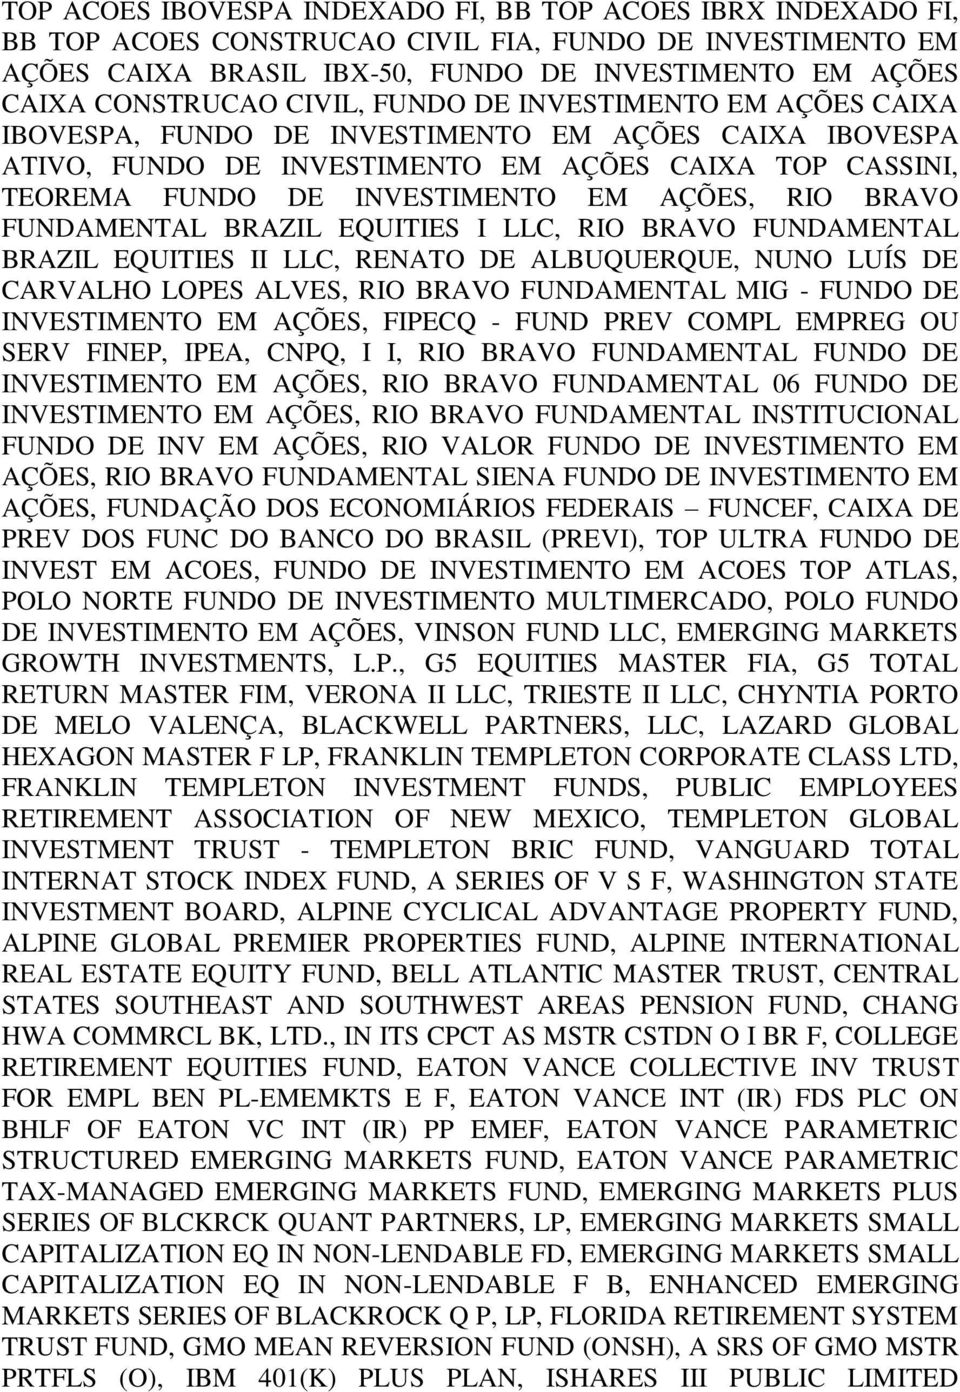 RIO BRAVO FUNDAMENTAL BRAZIL EQUITIES I LLC, RIO BRAVO FUNDAMENTAL BRAZIL EQUITIES II LLC, RENATO DE ALBUQUERQUE, NUNO LUÍS DE CARVALHO LOPES ALVES, RIO BRAVO FUNDAMENTAL MIG - FUNDO DE INVESTIMENTO